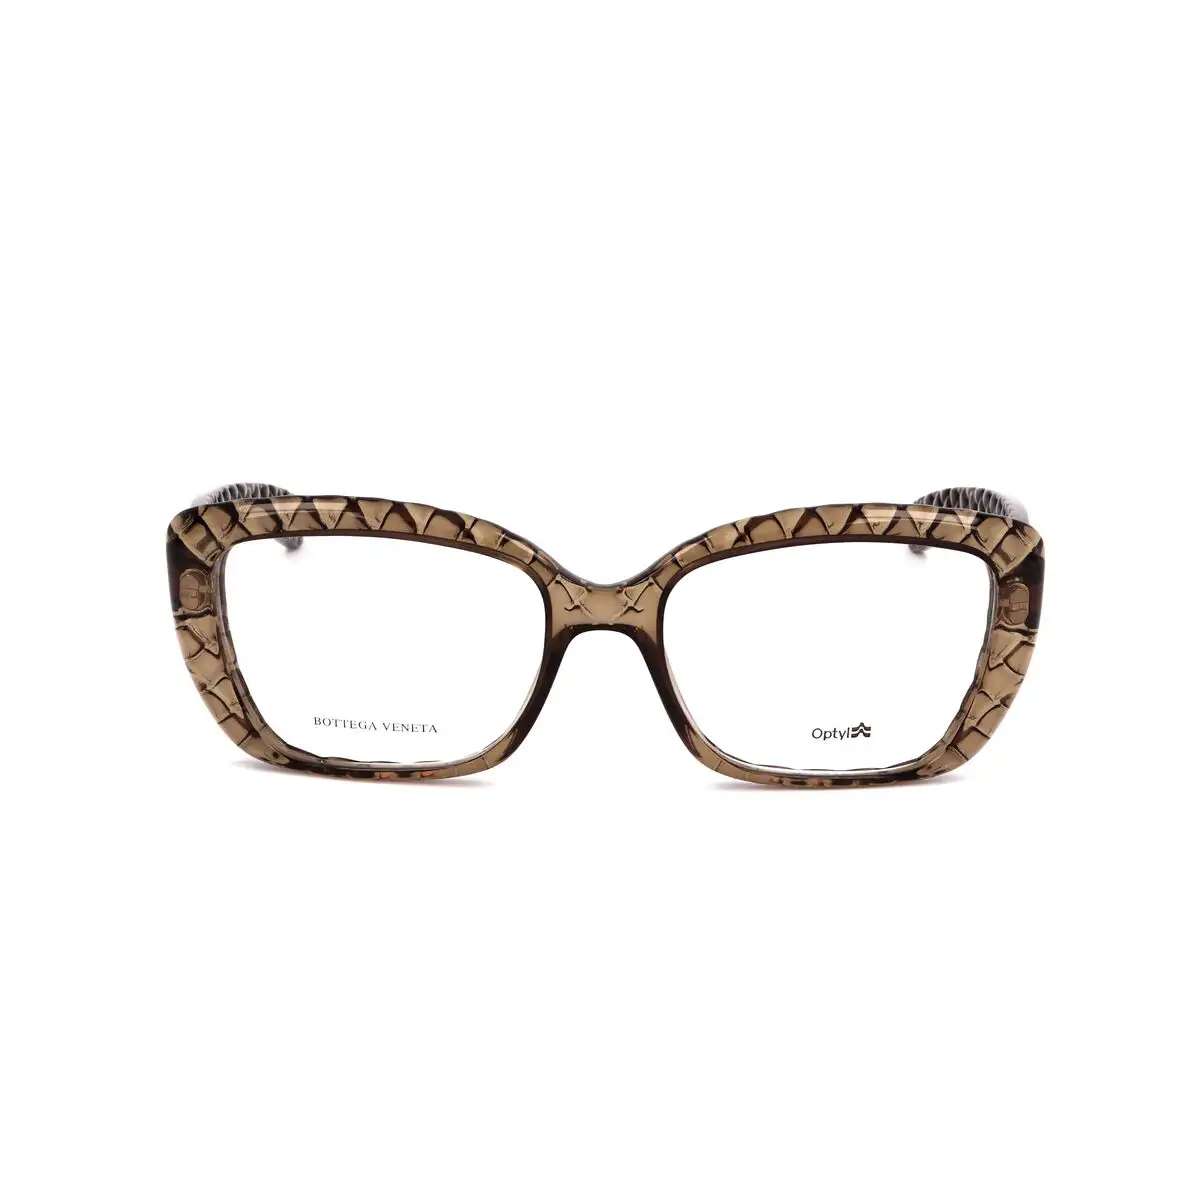 Monture de lunettes femme bottega veneta bv 601 j 439_1855. DIAYTAR SENEGAL - L'Art de Choisir, l'Art de S'émerveiller. Explorez notre boutique en ligne et choisissez des articles qui éveillent votre sens de l'émerveillement.